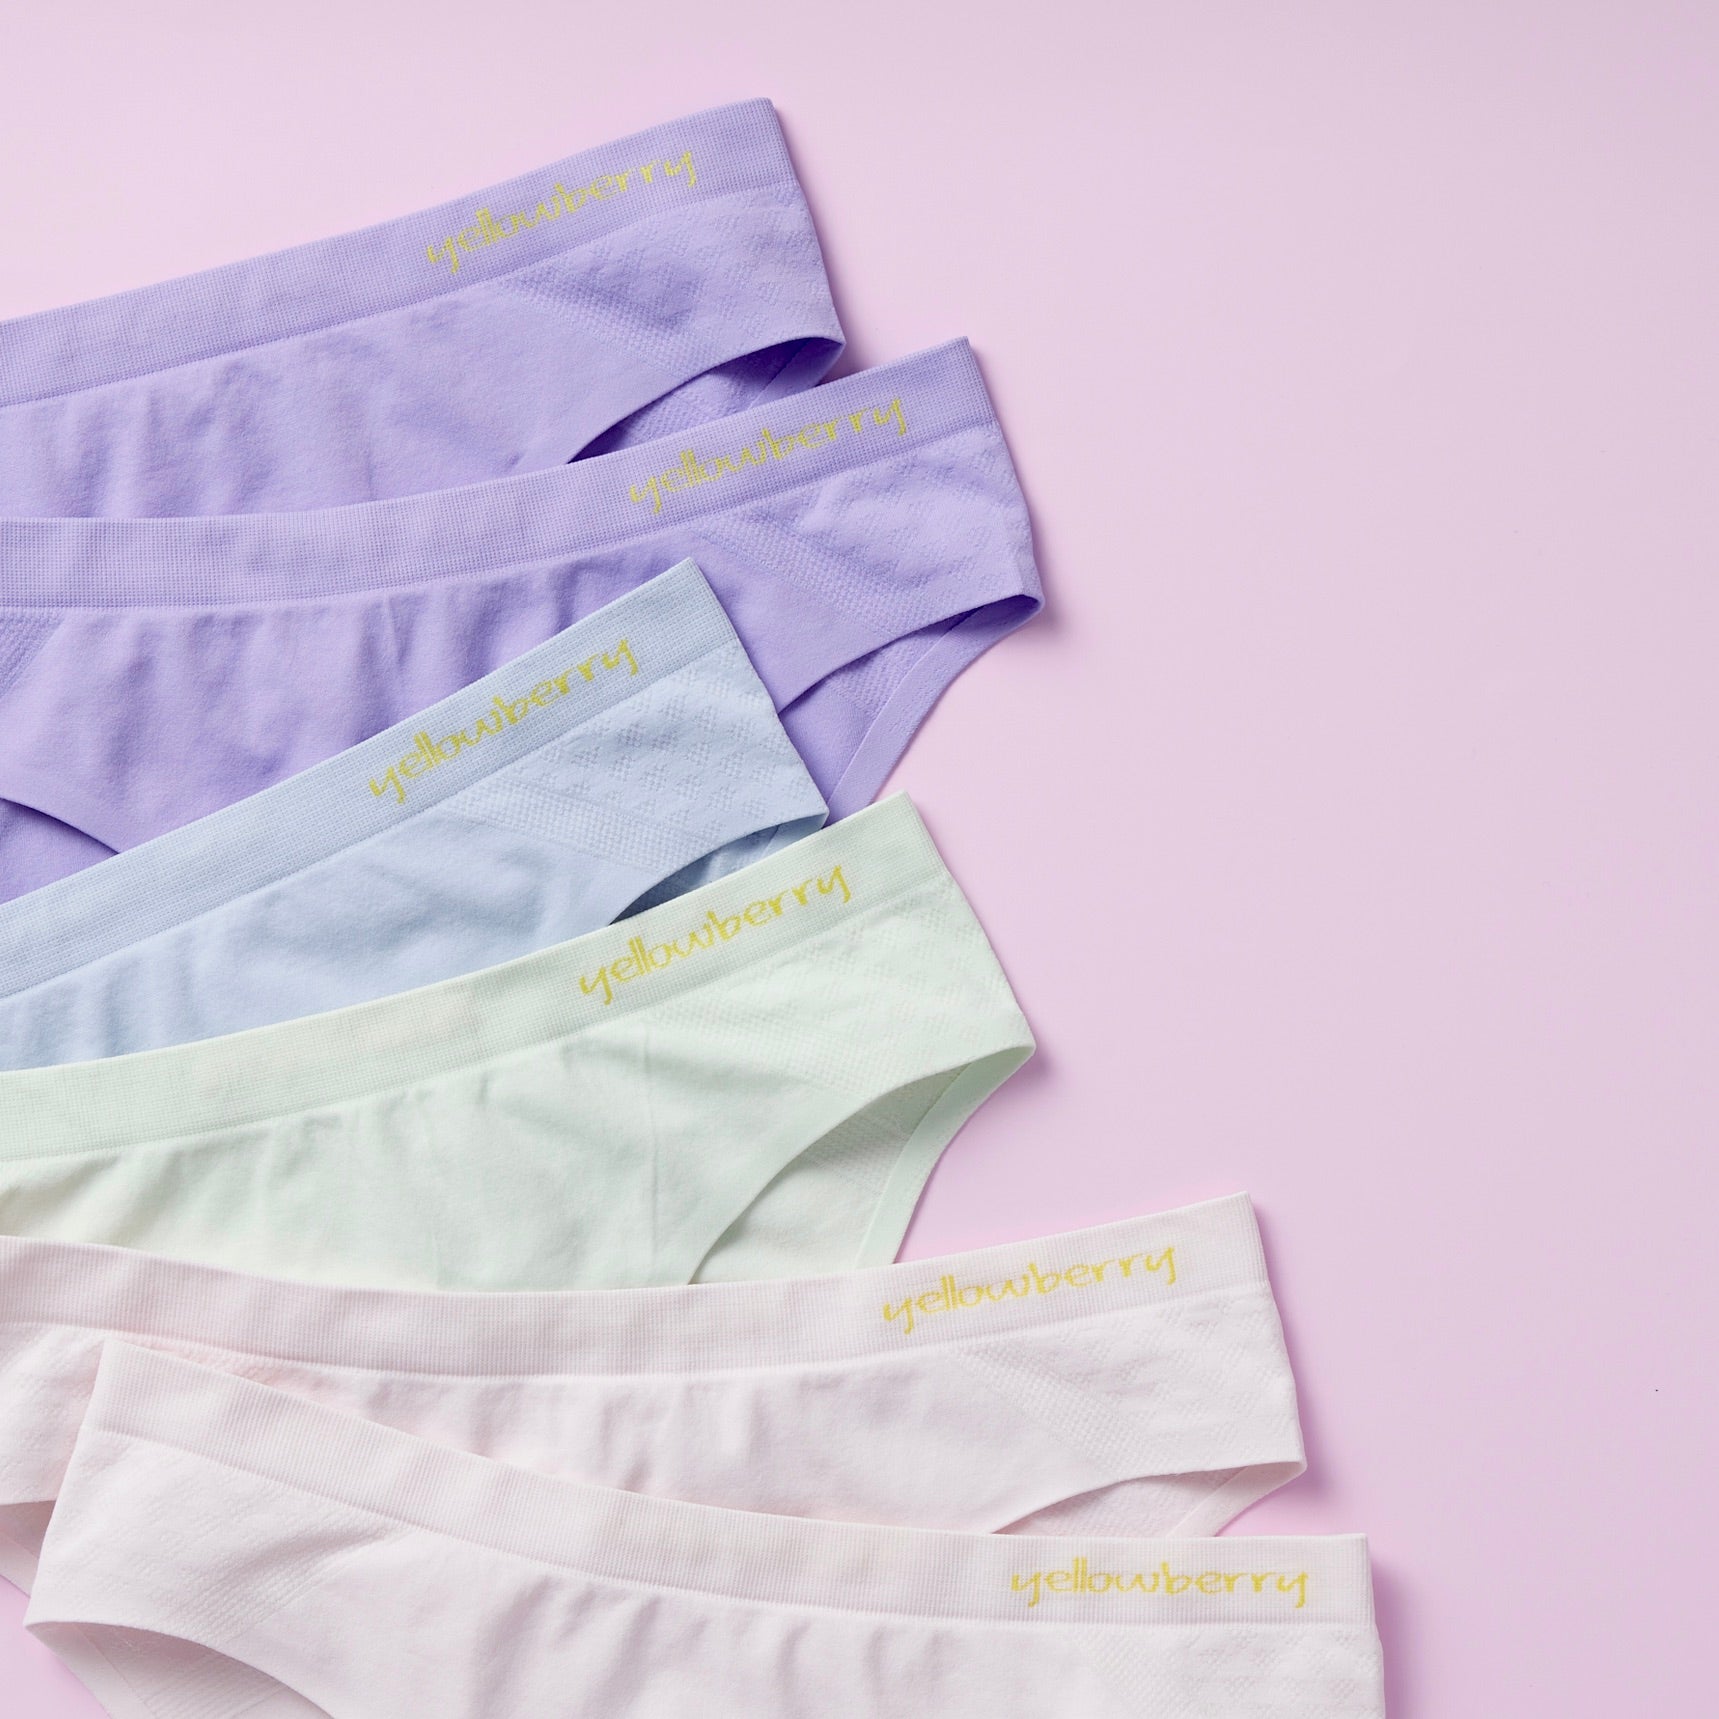  Best Seamless Underwear For Women